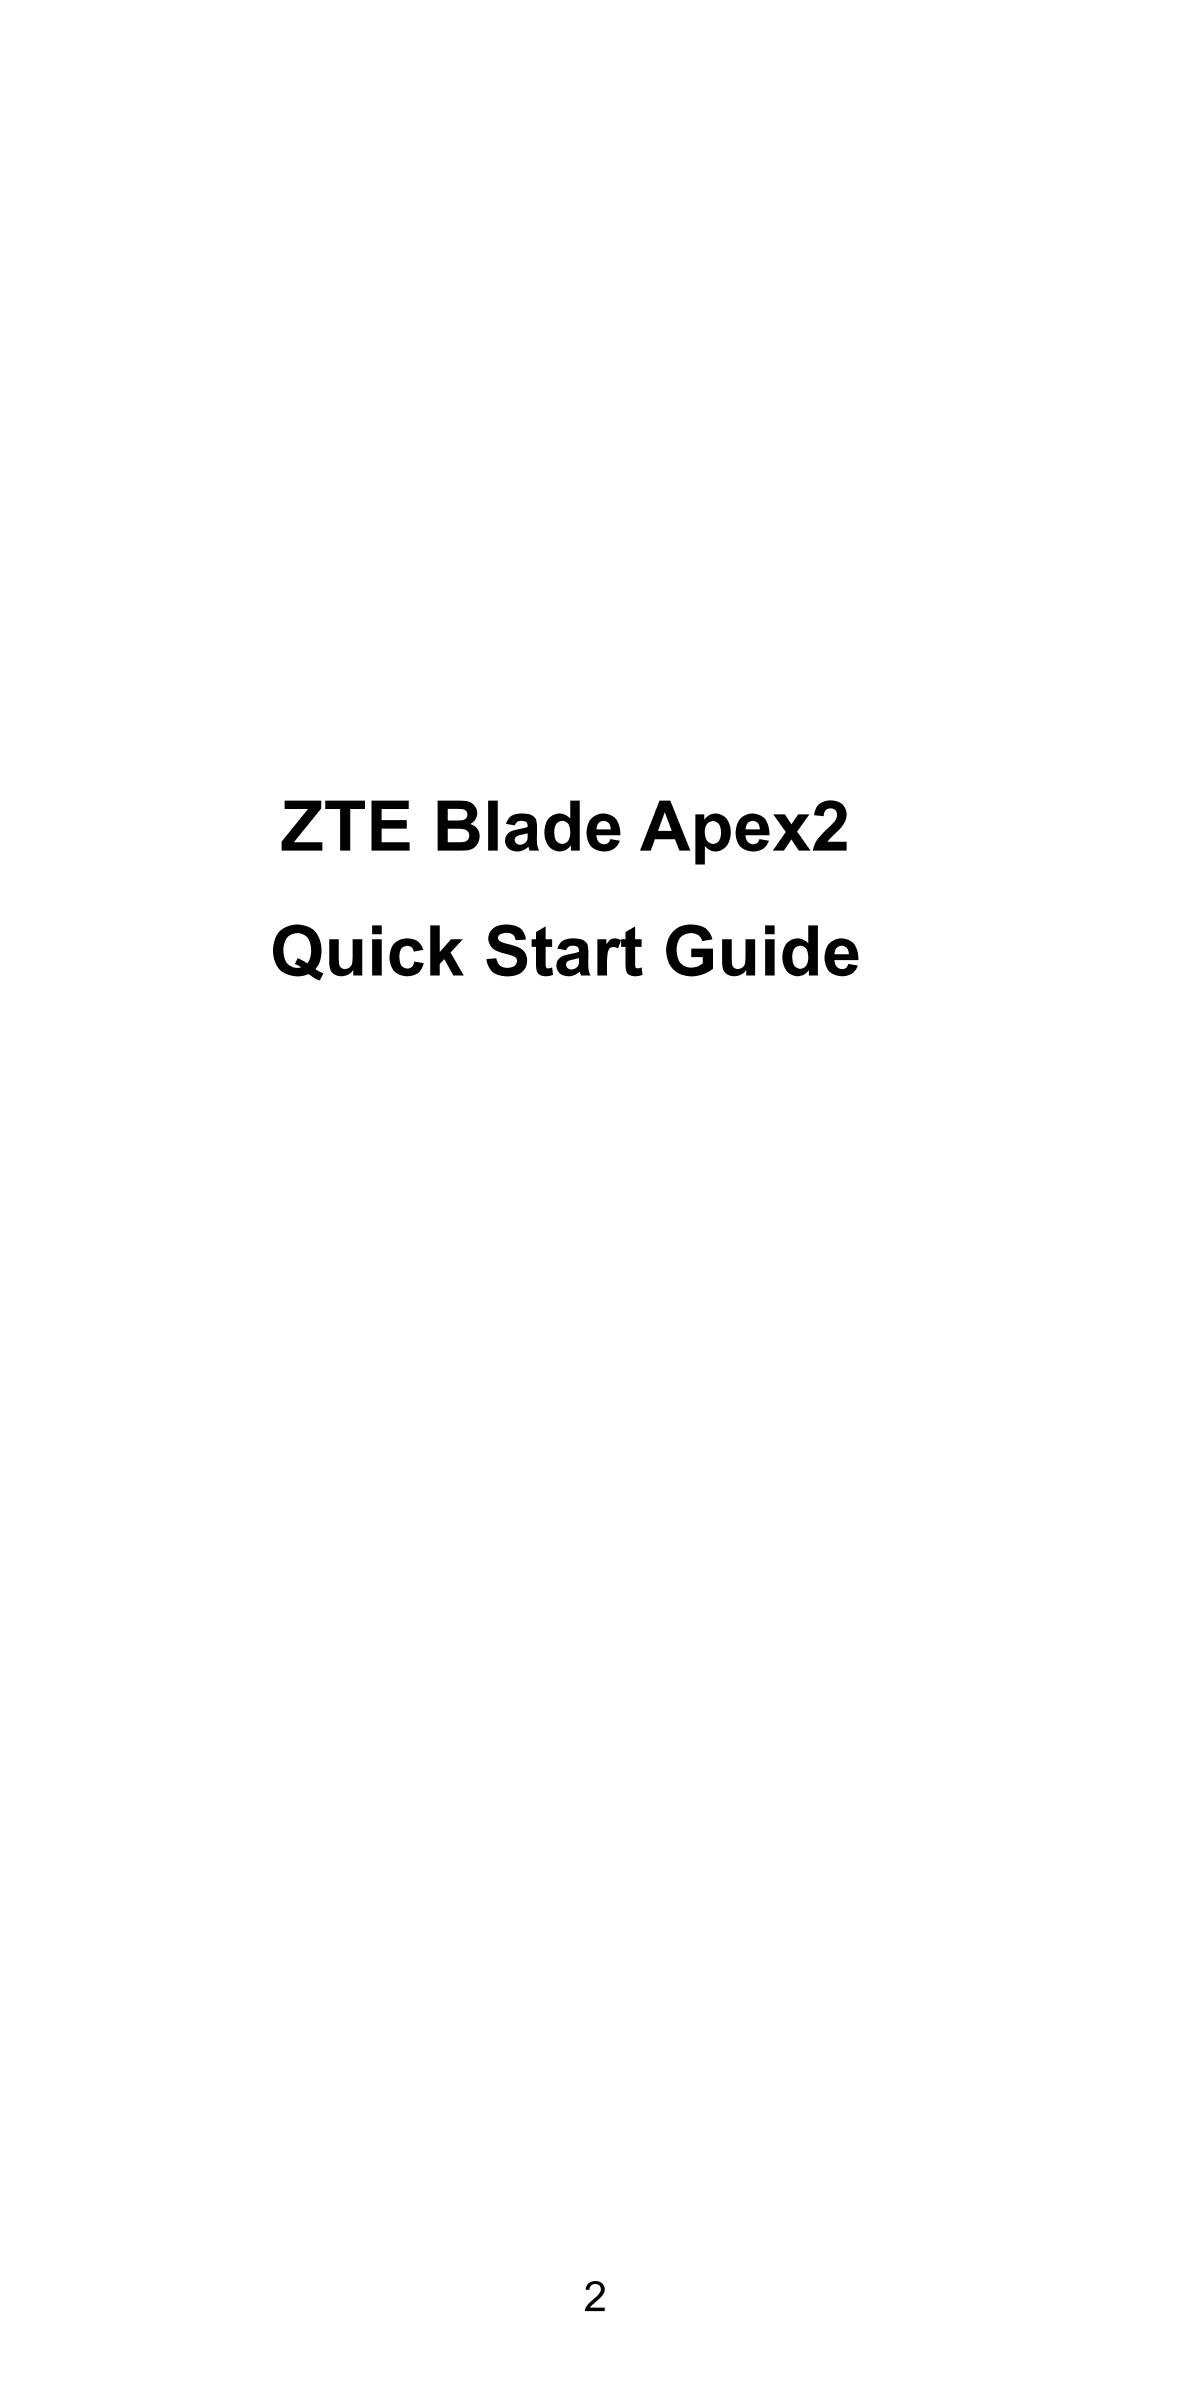 ZTE Blade Apex2
Quick Start Guide
2